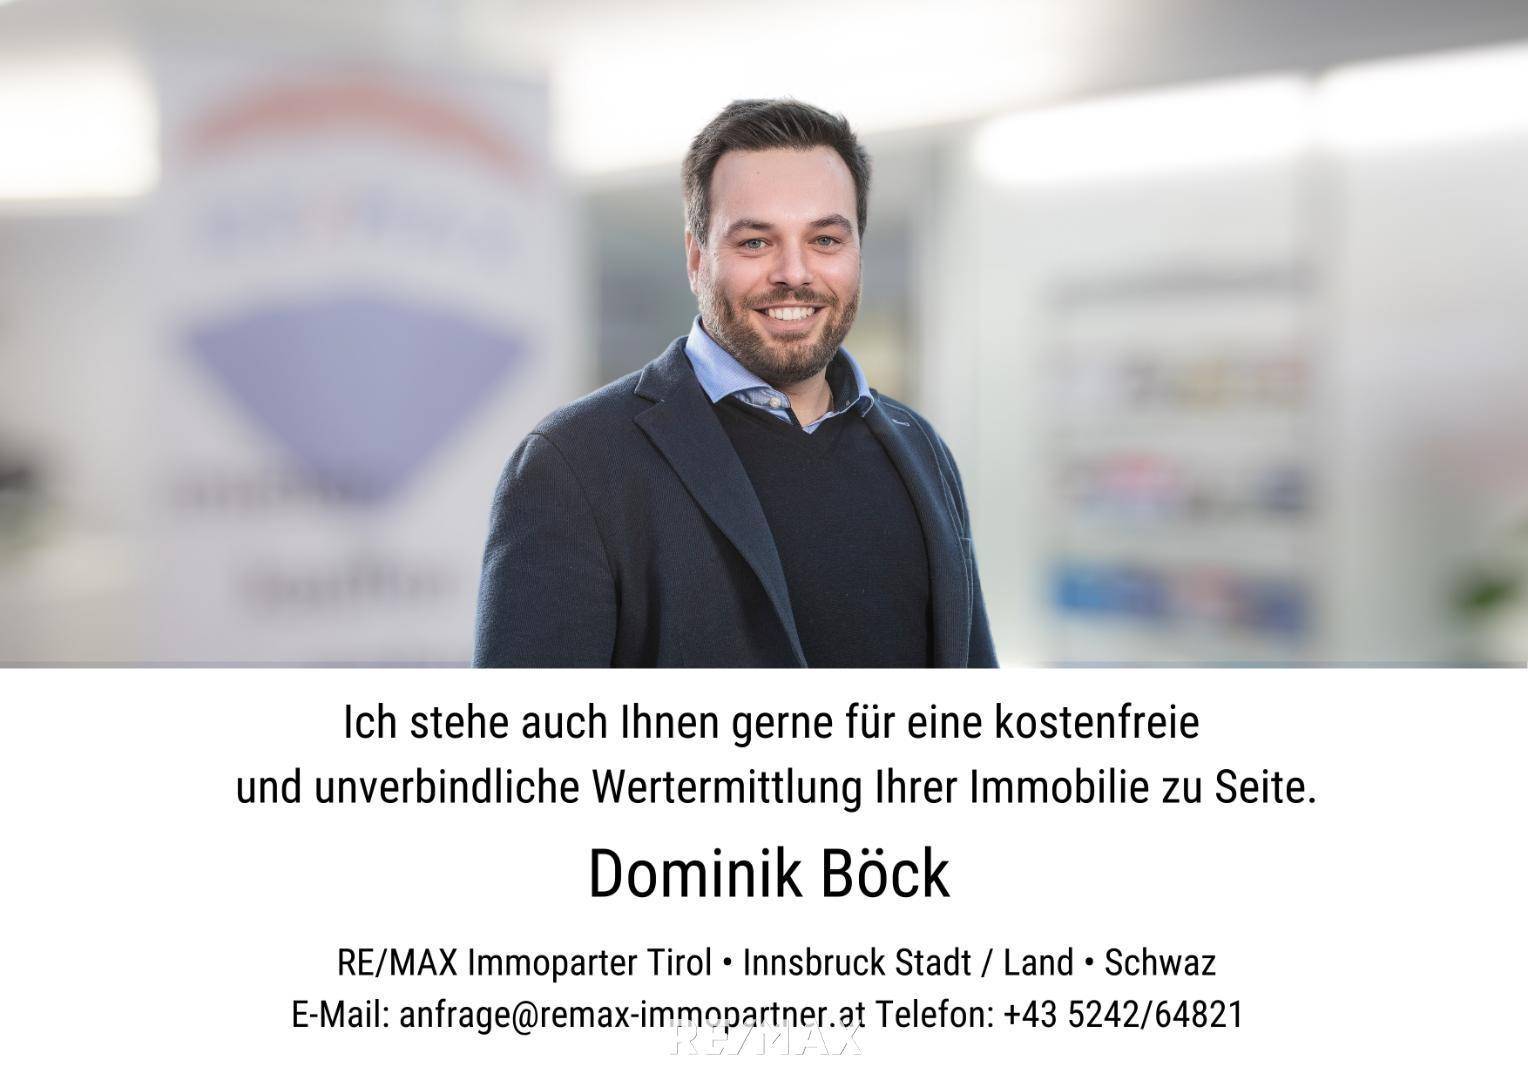 Dominik Böck#remaximmopartner